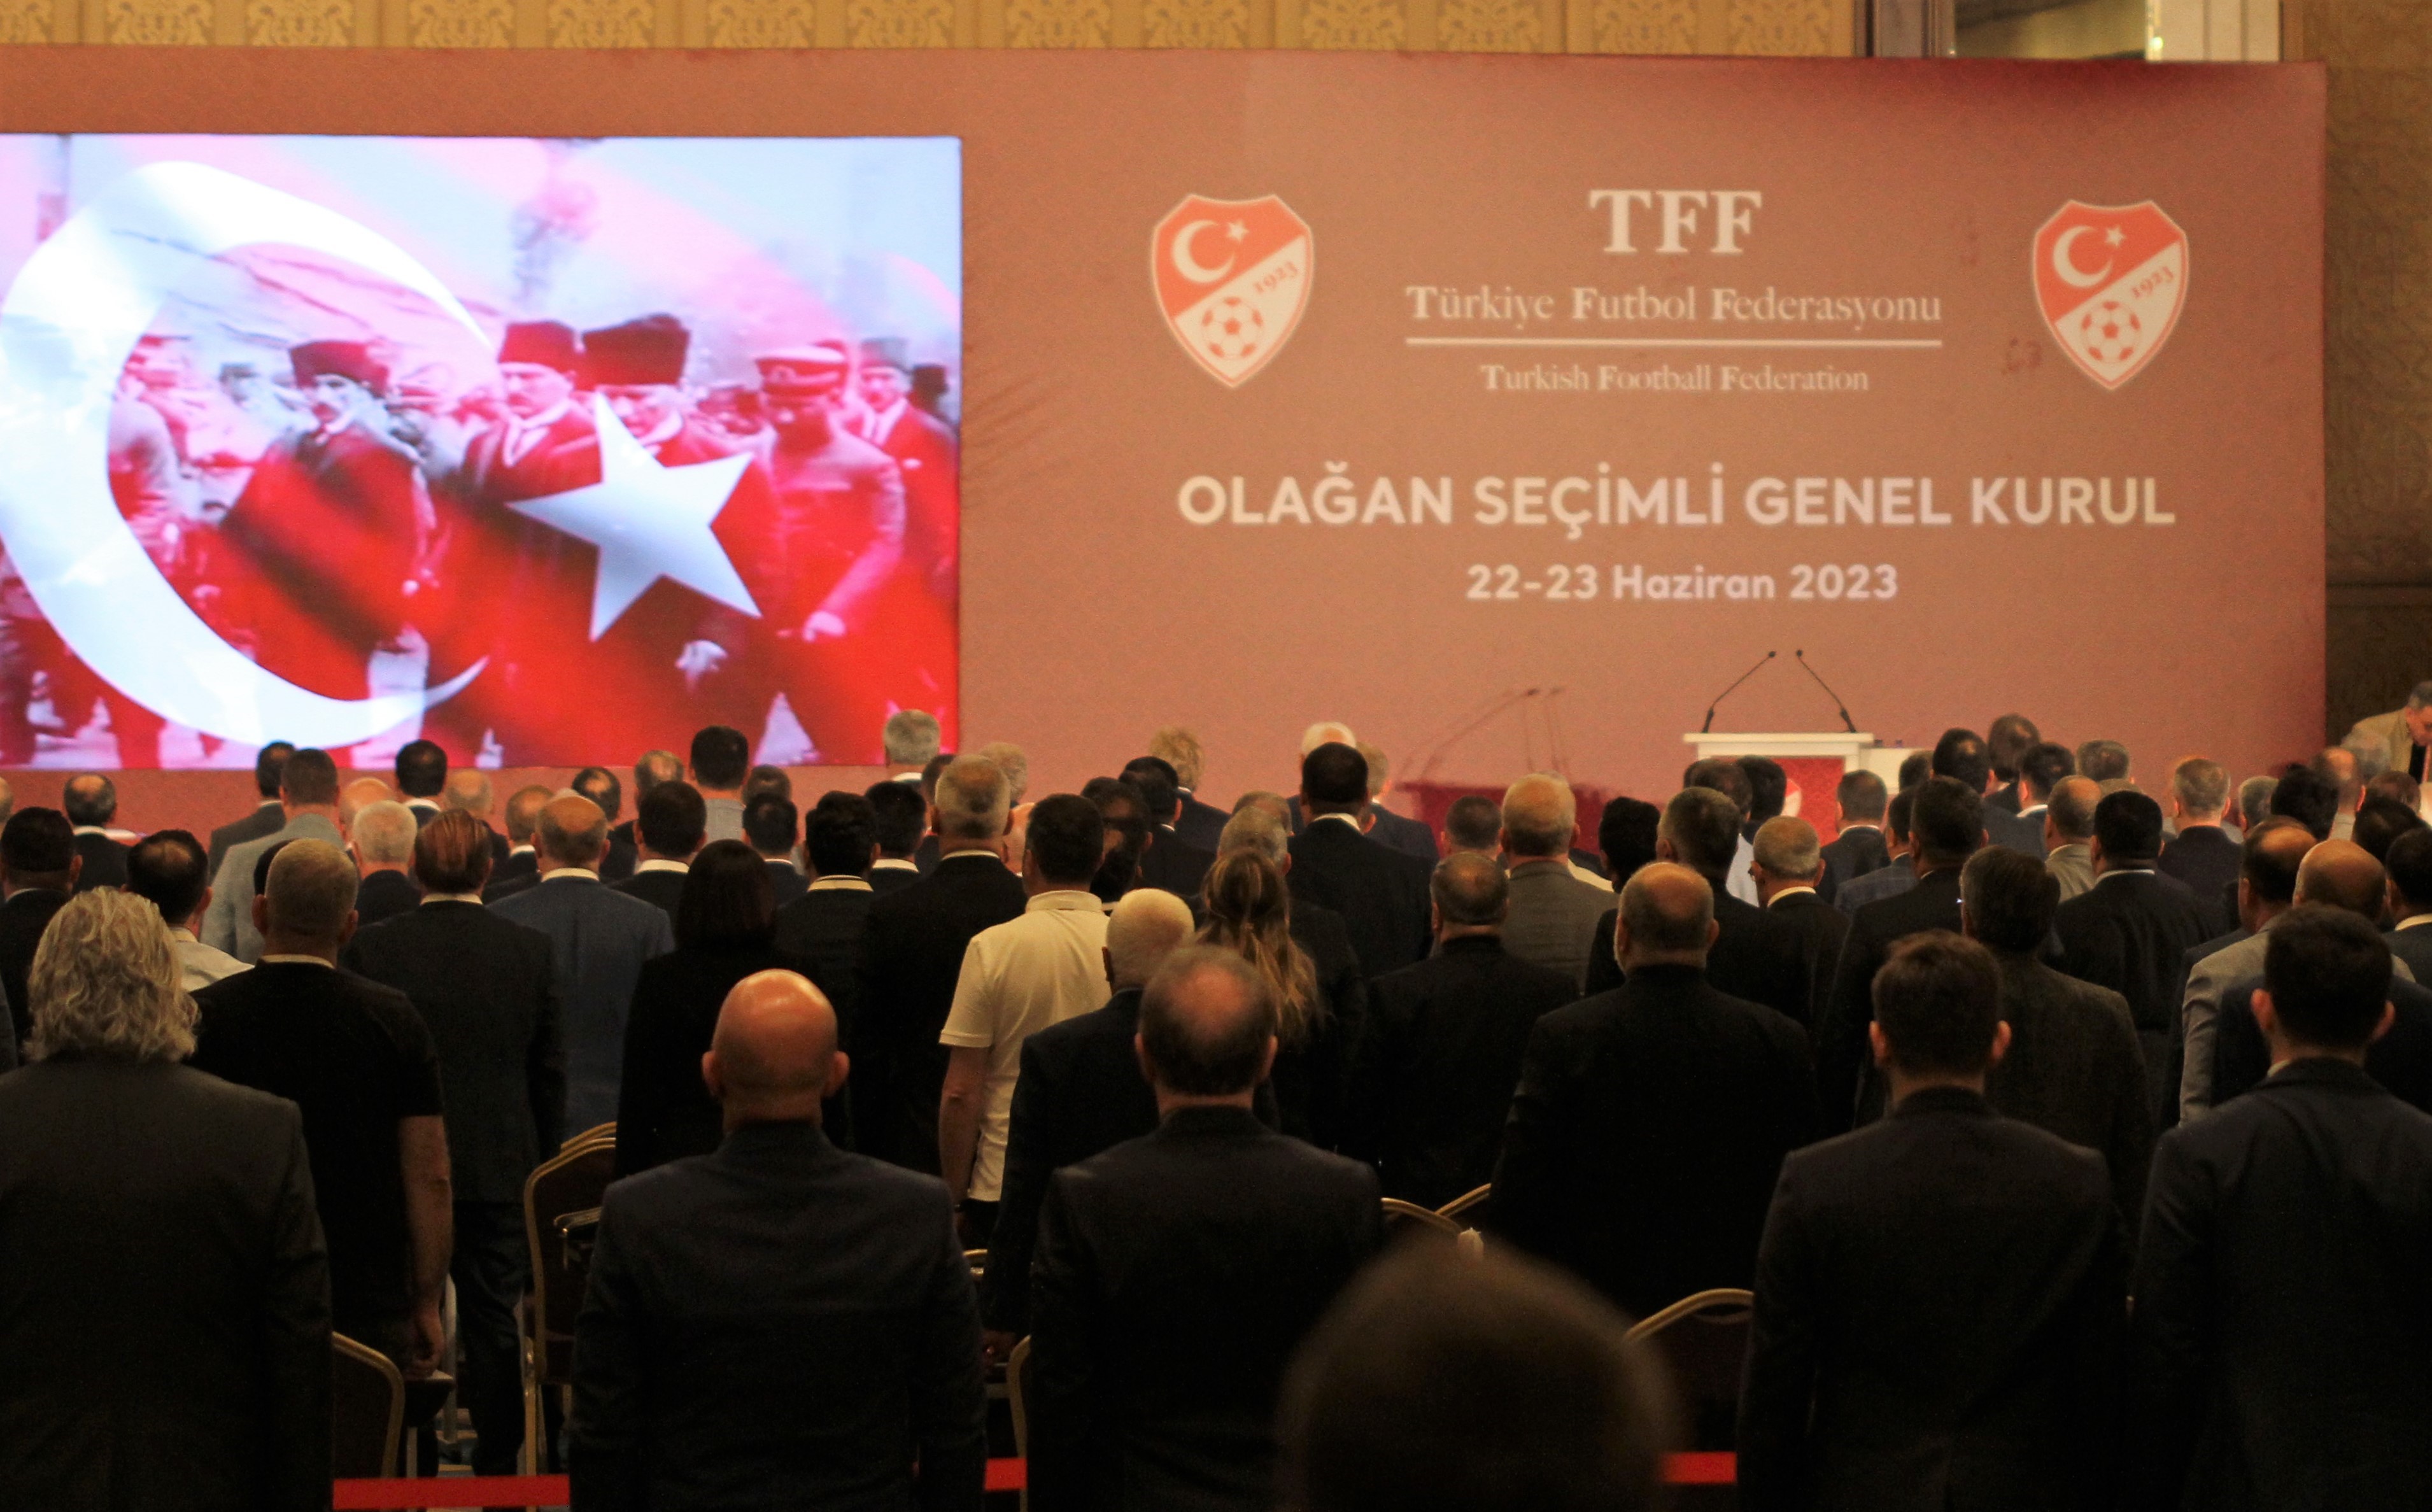 TFF Olağan Seçimli Genel Kurulu, Ankara'da başladı